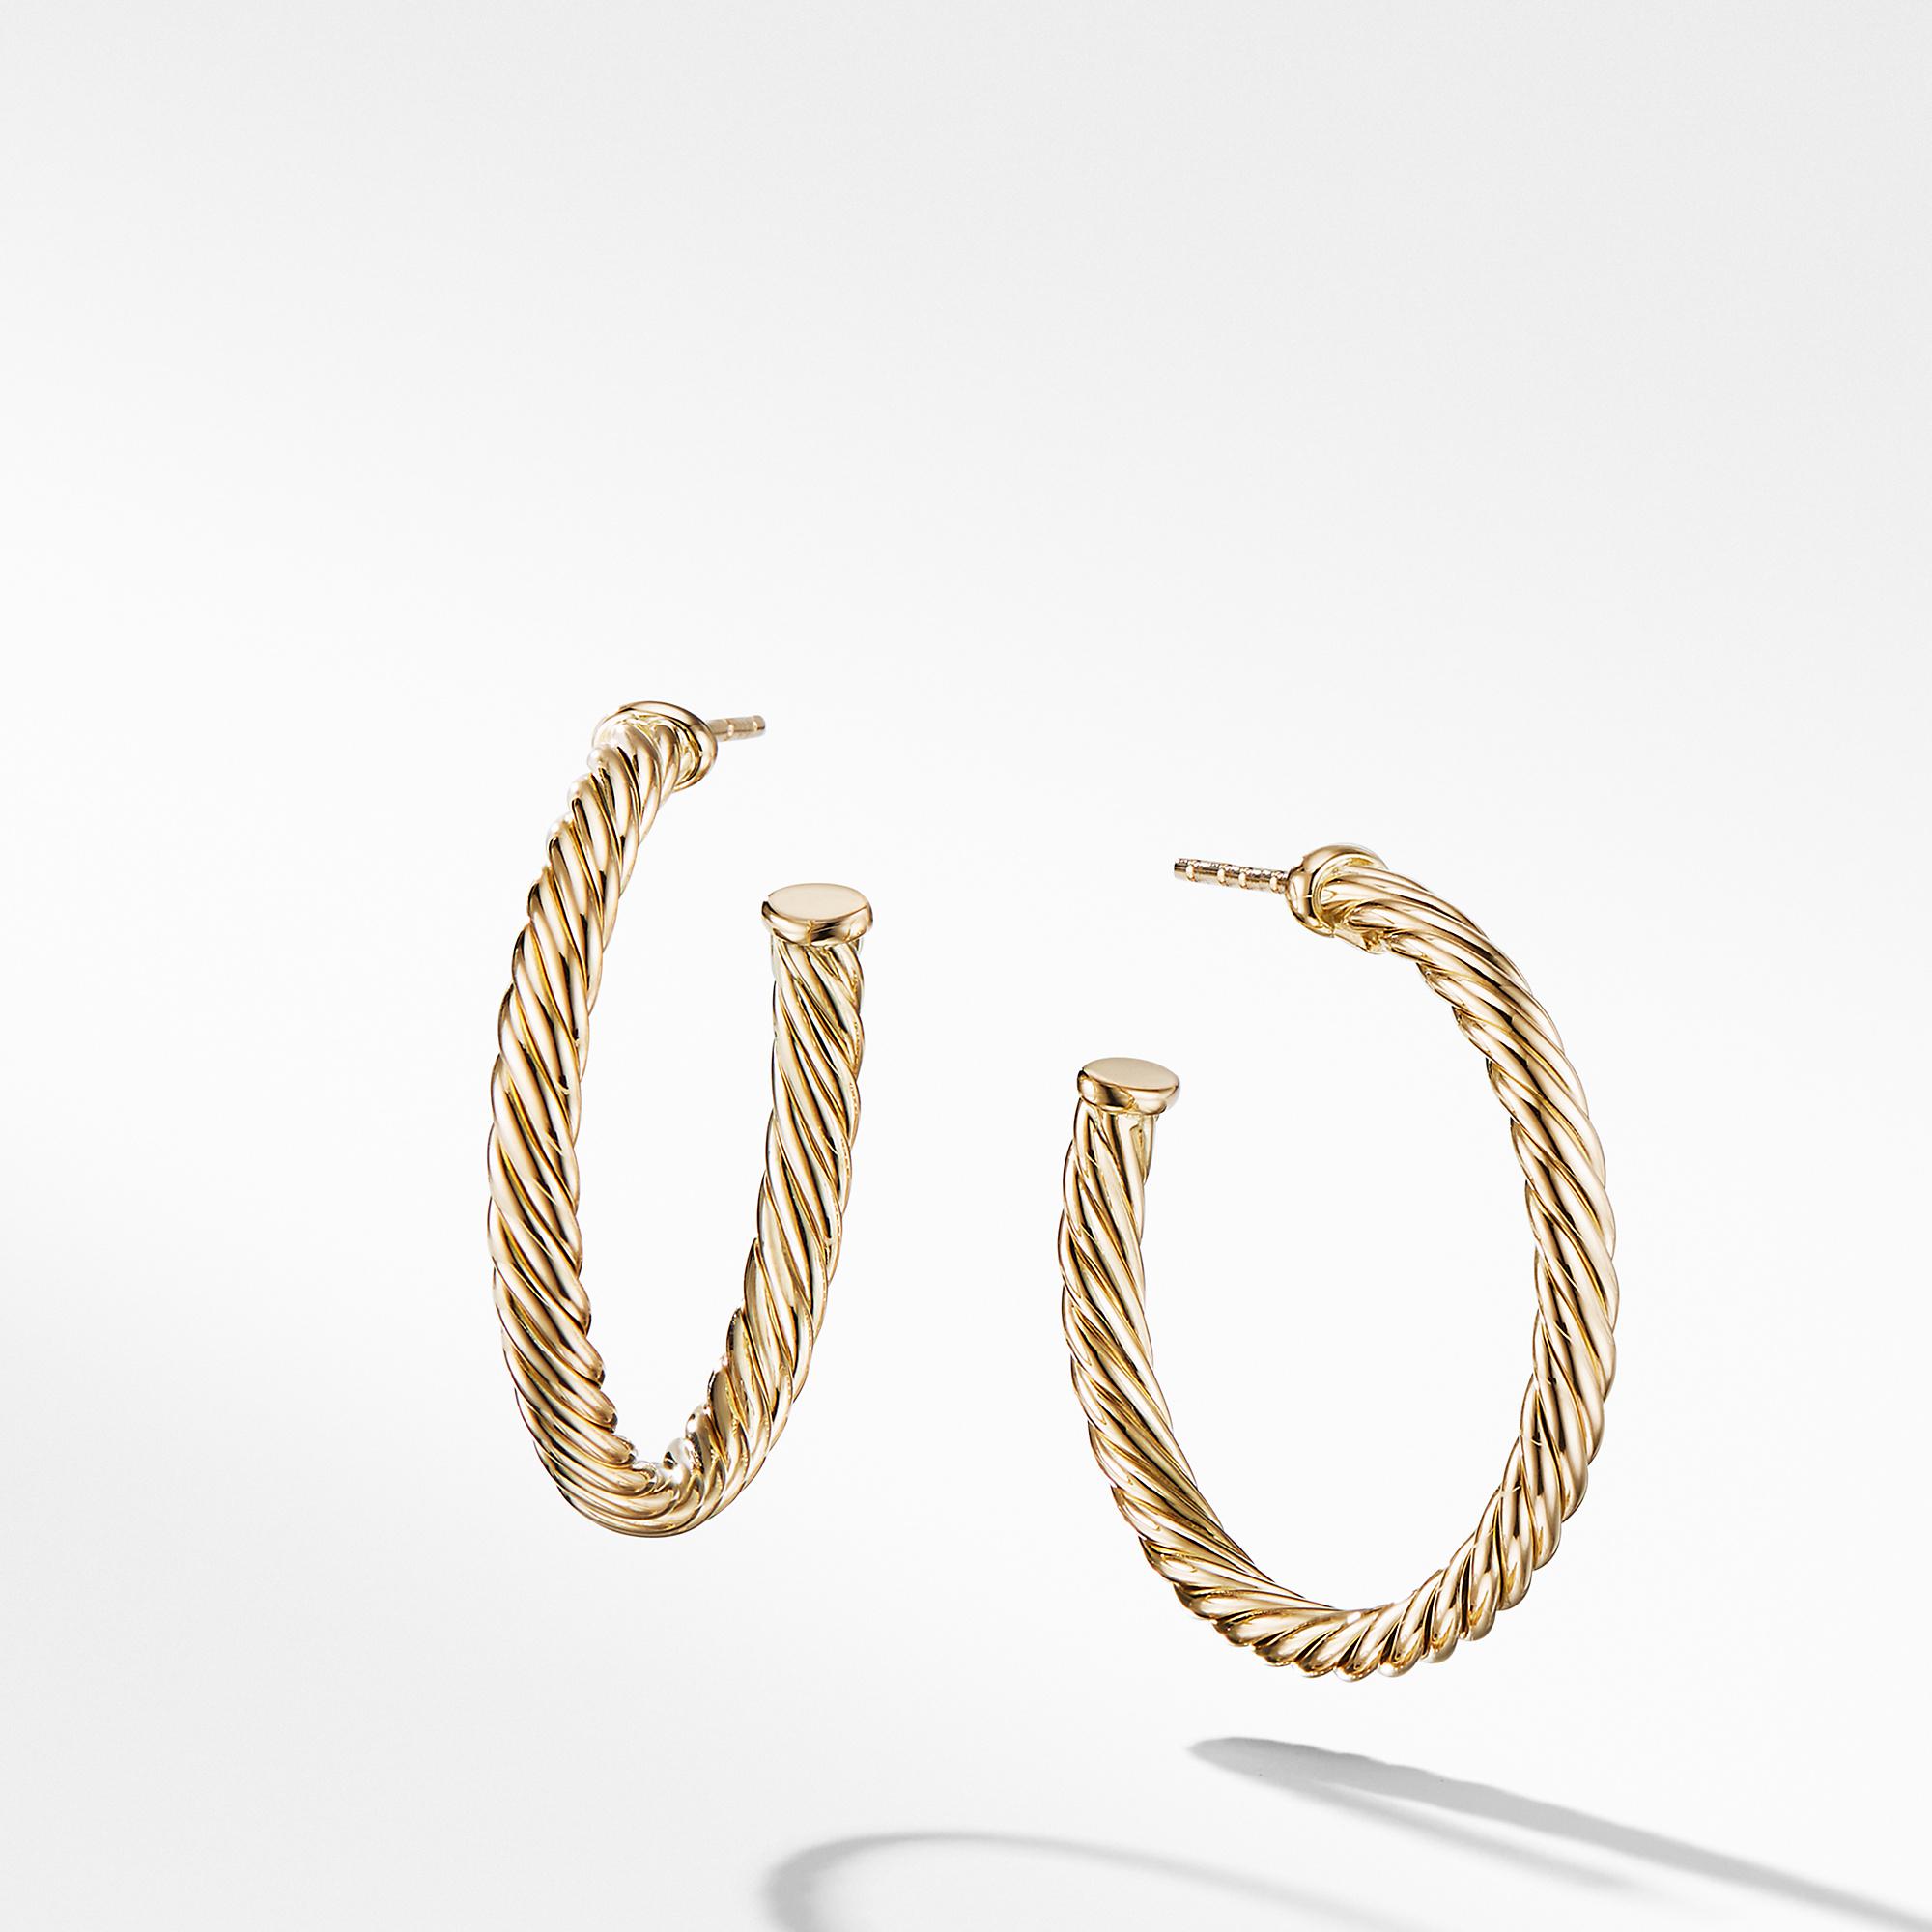 David Yurman Cablespira Hoop Earrings in 18k Yellow Gold, 1 inch